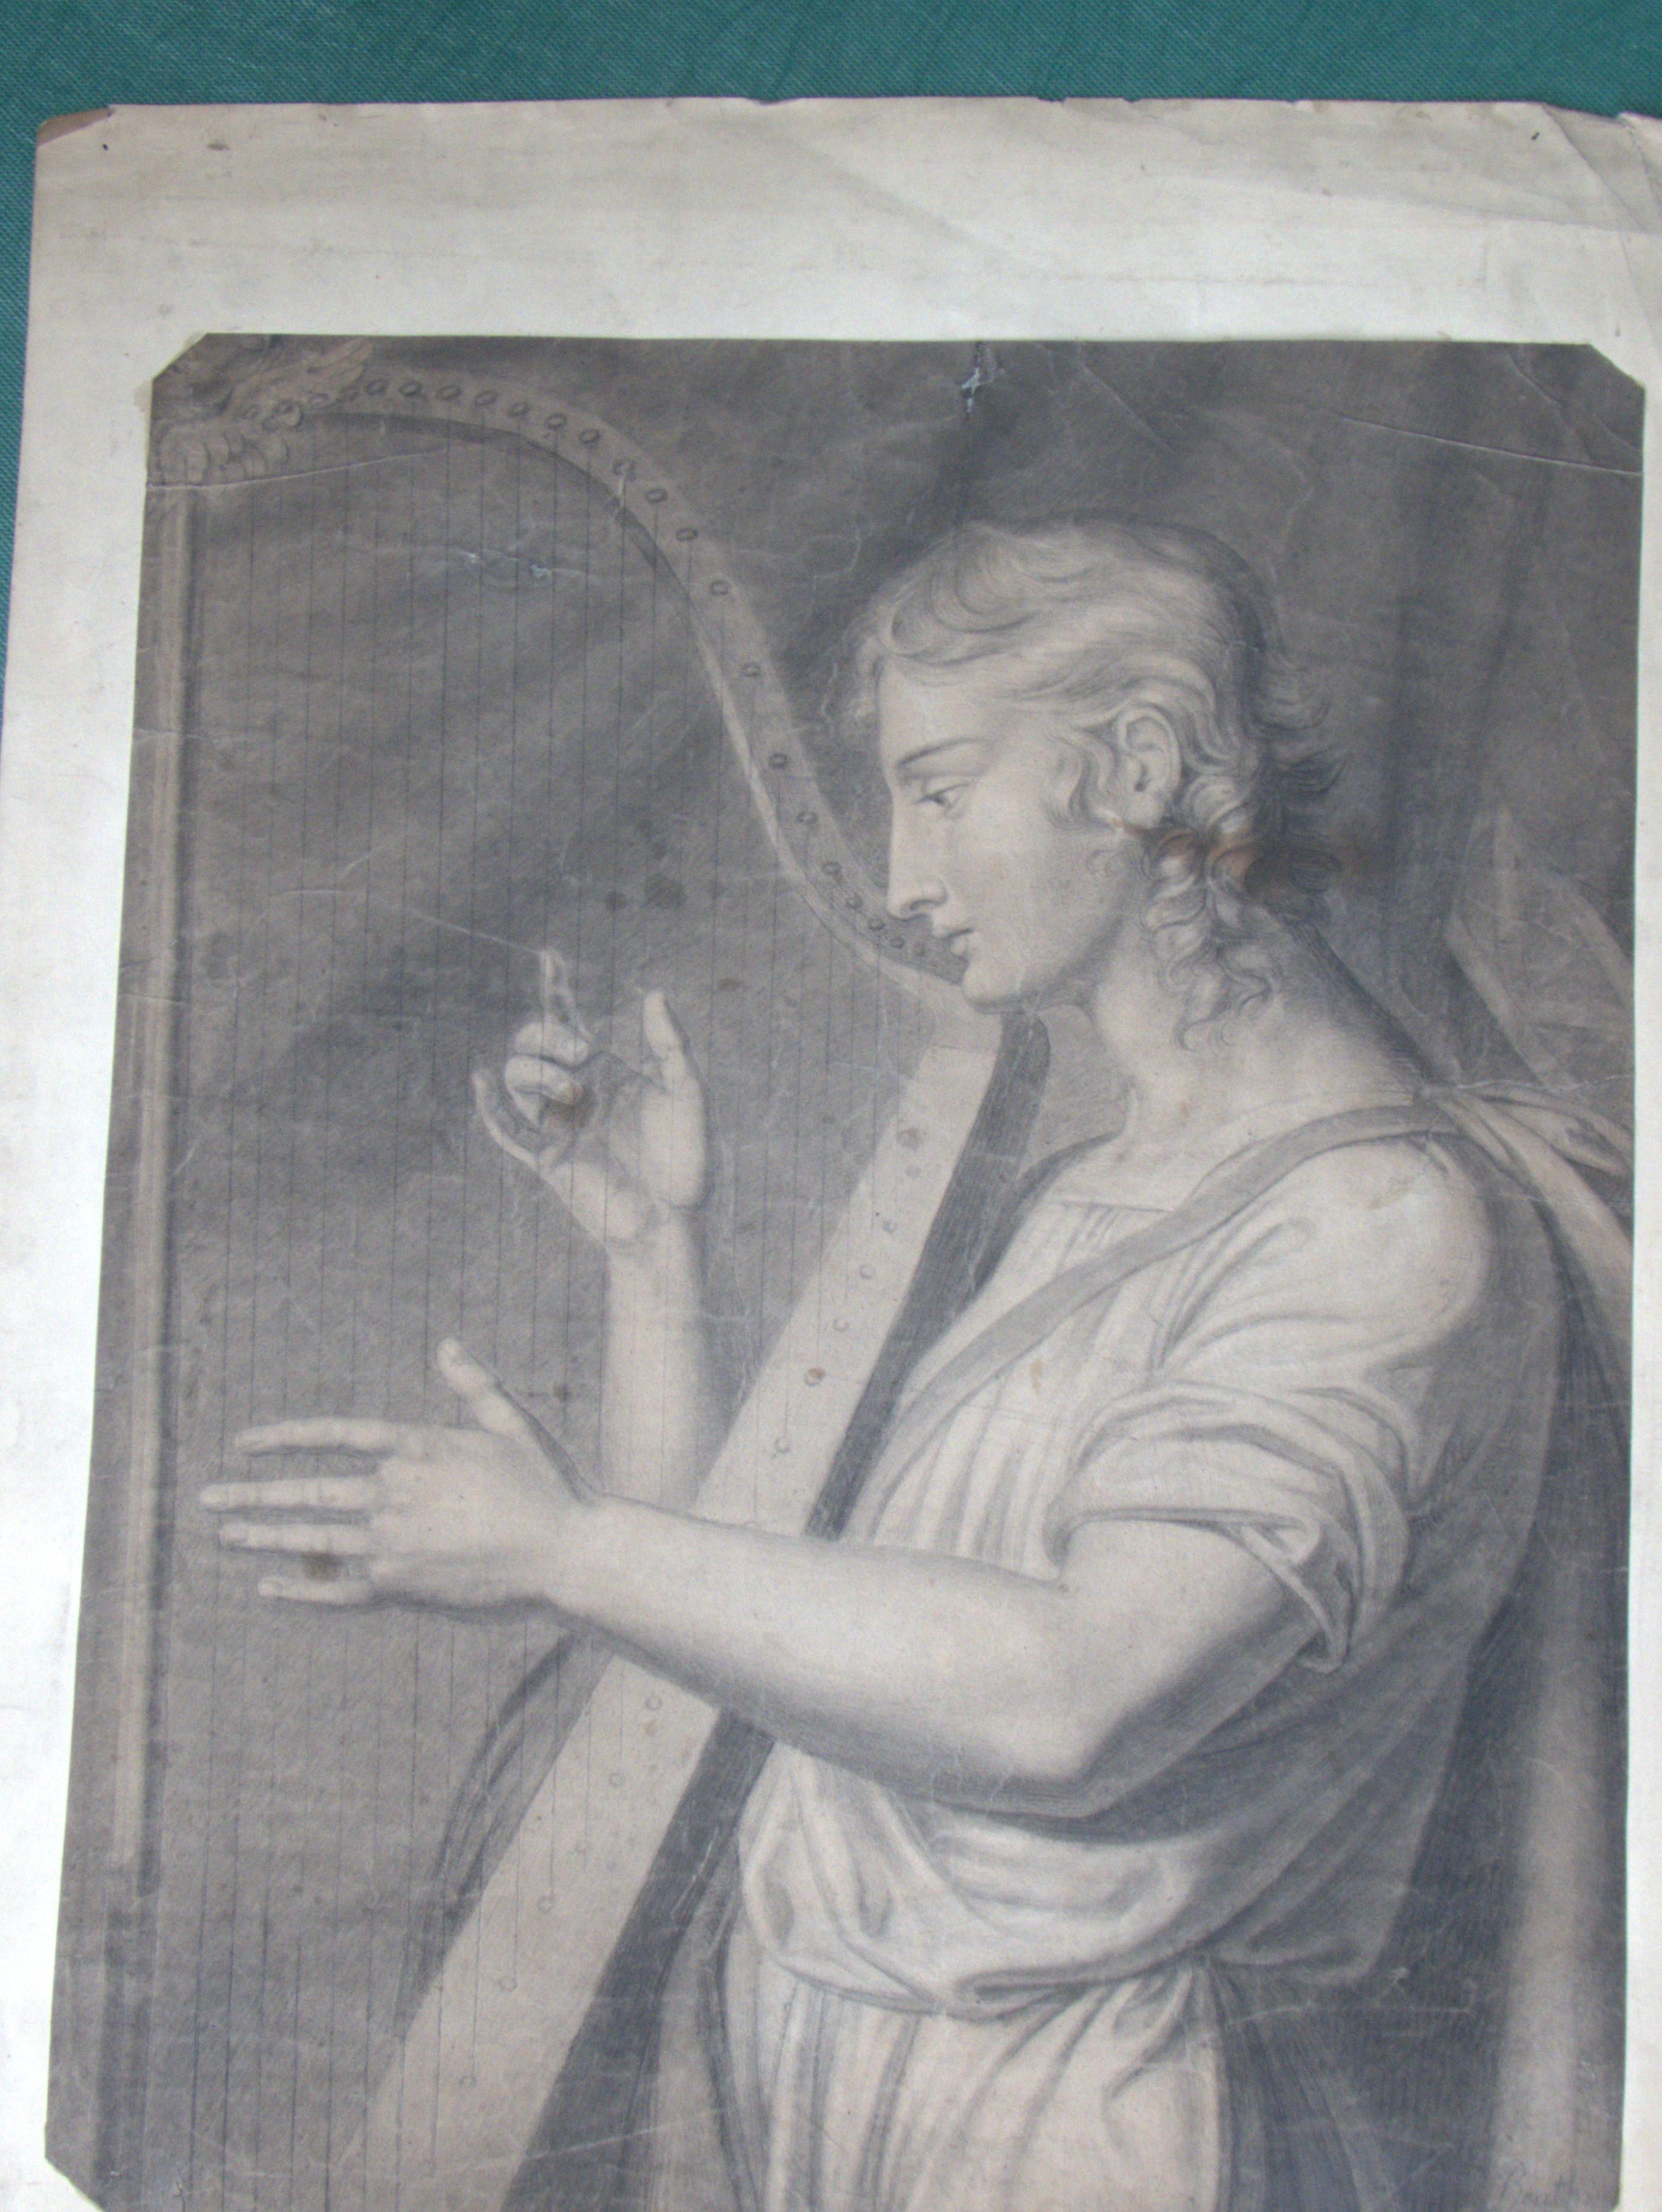 Ungerahmte Bleistiftzeichnung eines Harfenspielers aus dem 18. Jahrhundert.